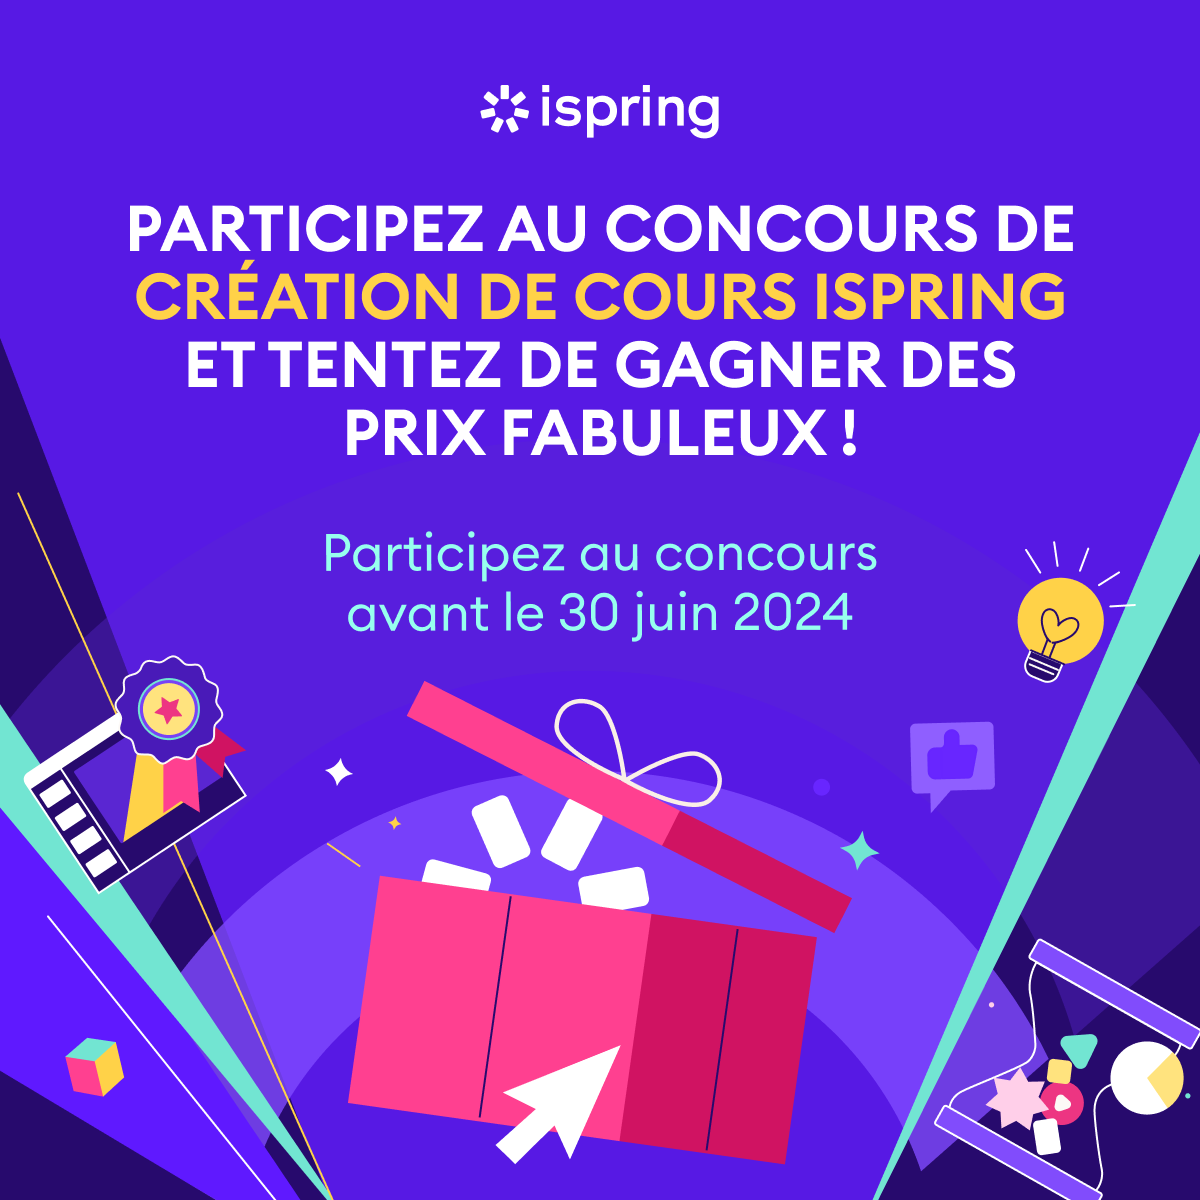 Participez au concours de création de cours iSpring